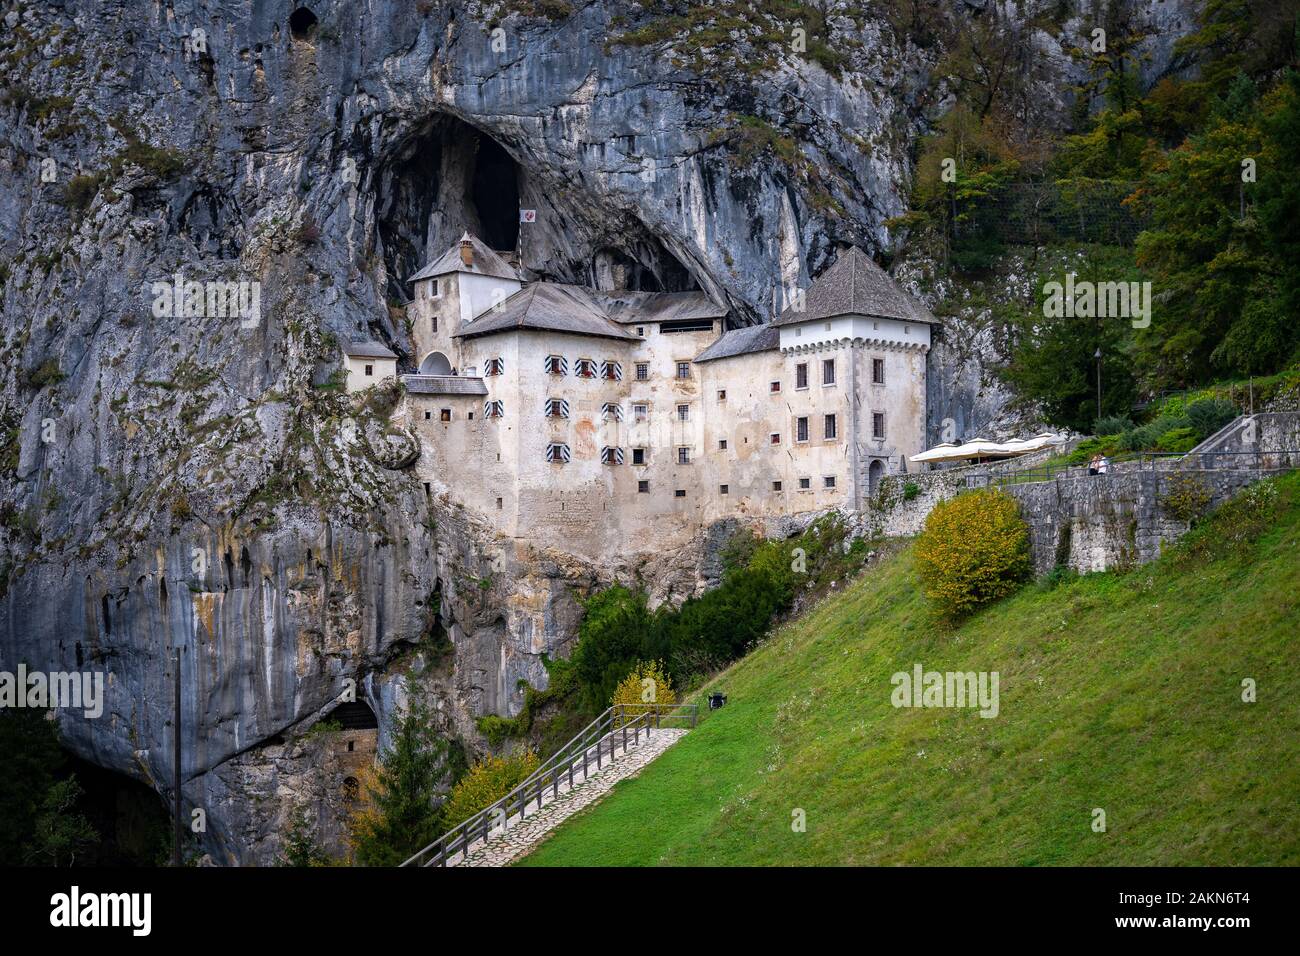 Predjama Castle, Slovenia - 13th-century castle built in cliff face cave Stock Photo